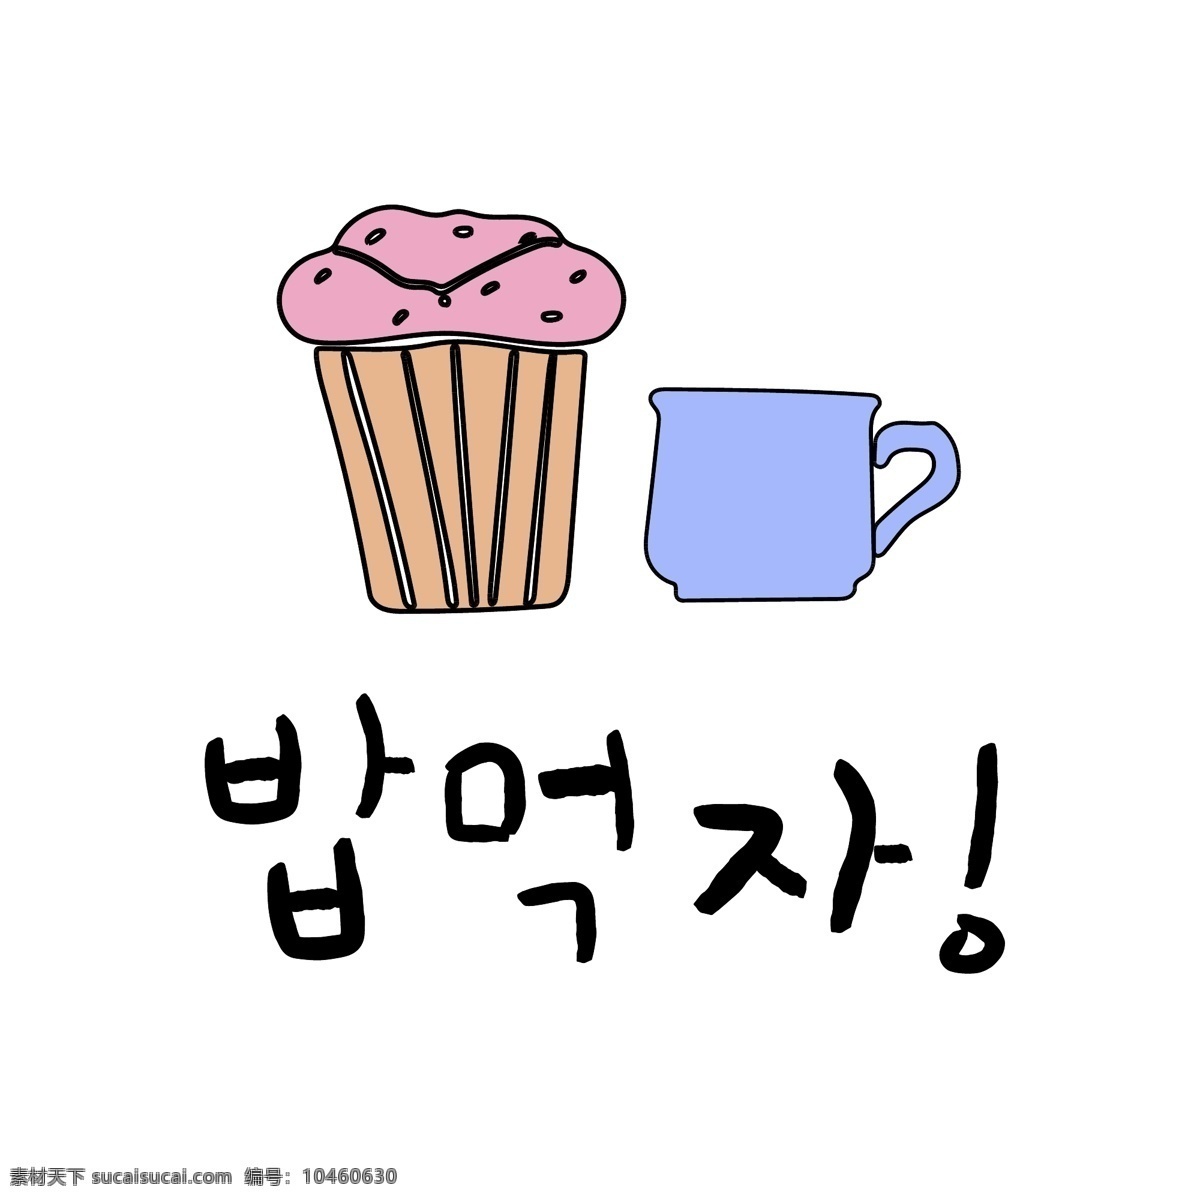 蛋糕 杯 韩国 常用语 吃饭 肝药 对话 漫画 吃饭吧 小的 向量 日常用语 橘黄色 卡通 蓝色 颜色粉色